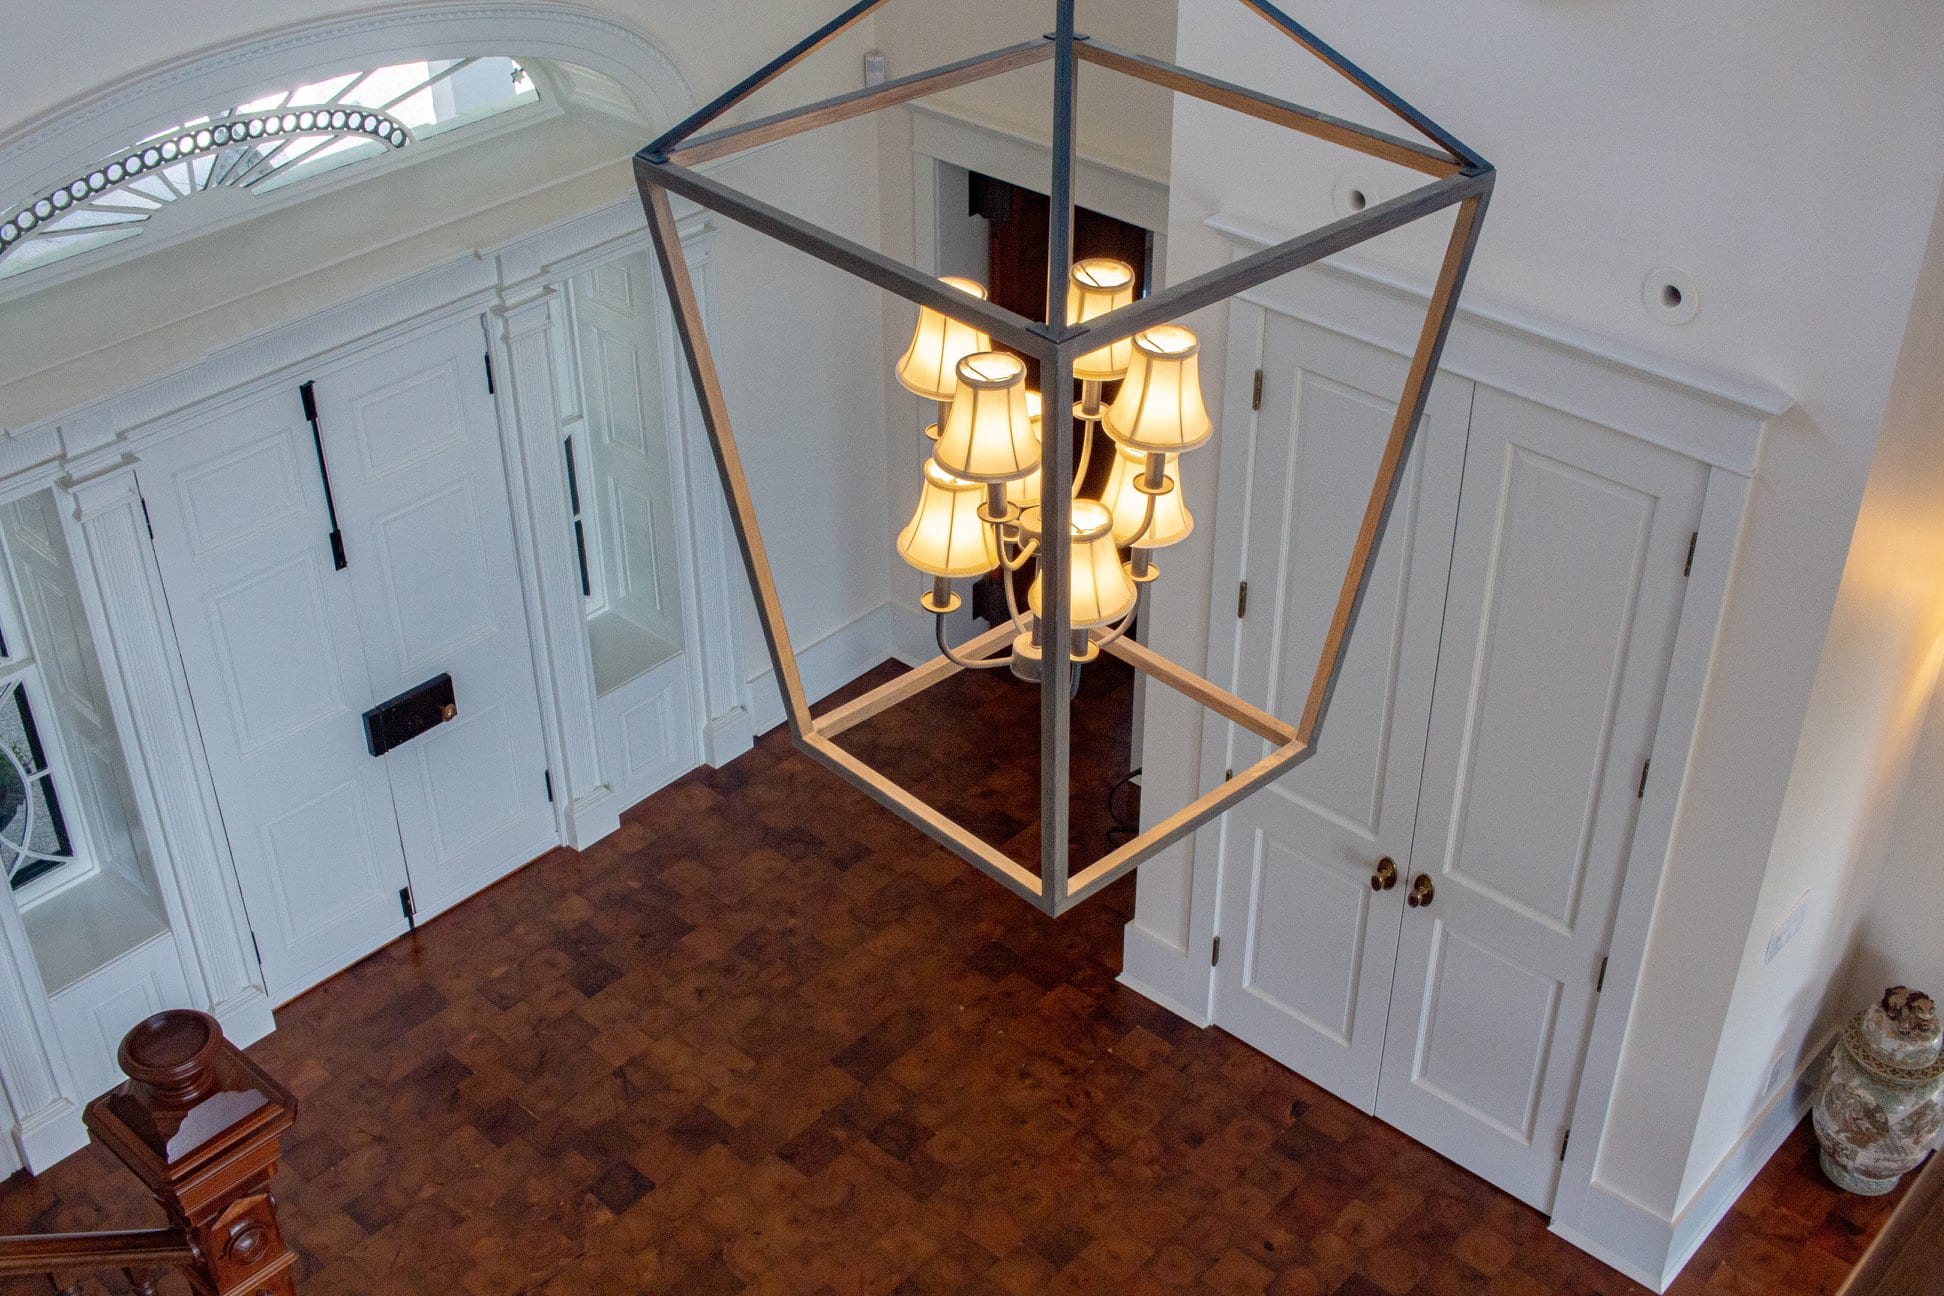 Lobby chandelier with Coolidge door